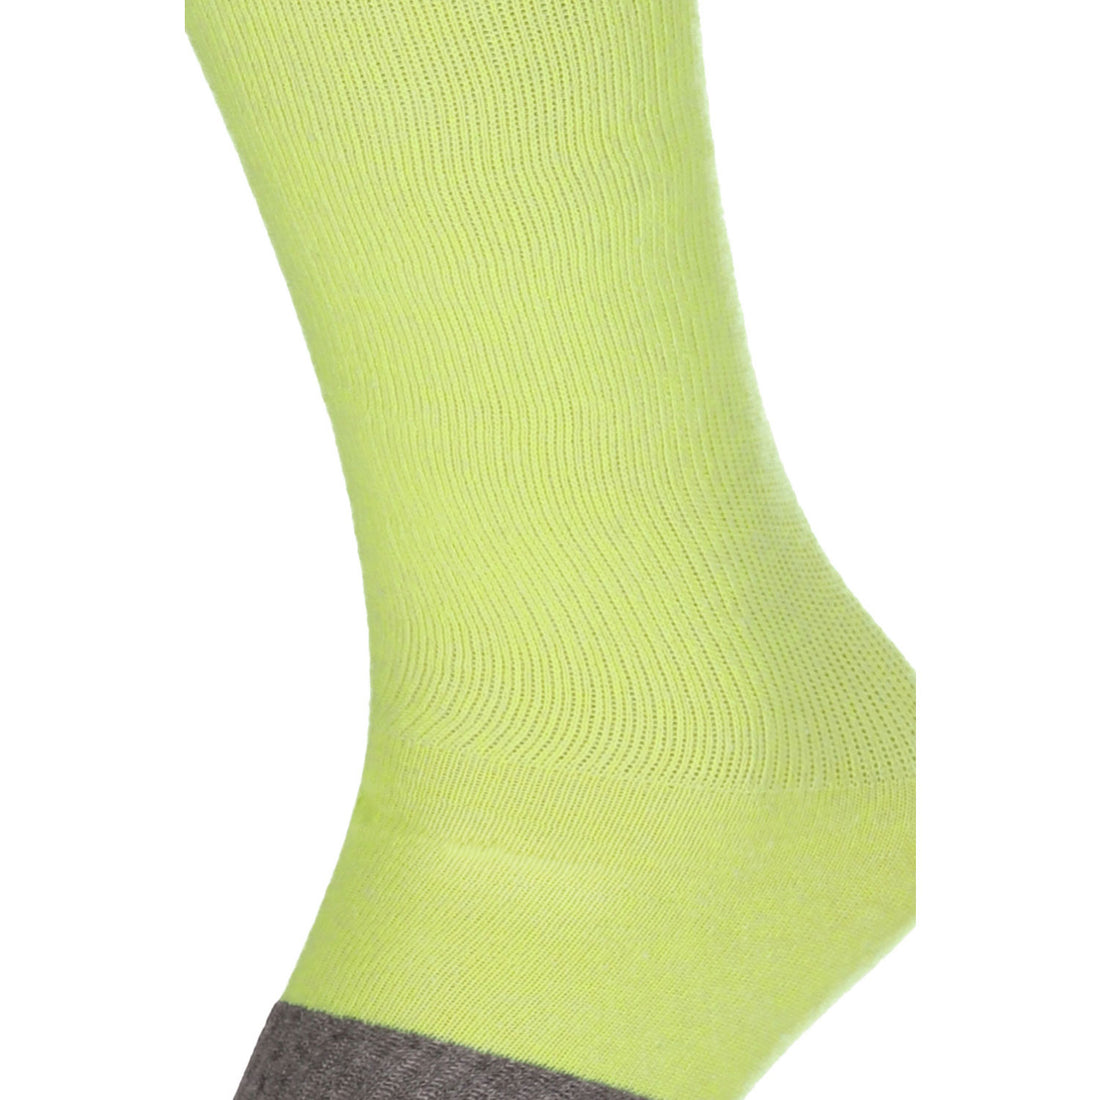 ChiliLifestyle Damen und Herren Compression Knie Socken Gelb 2er